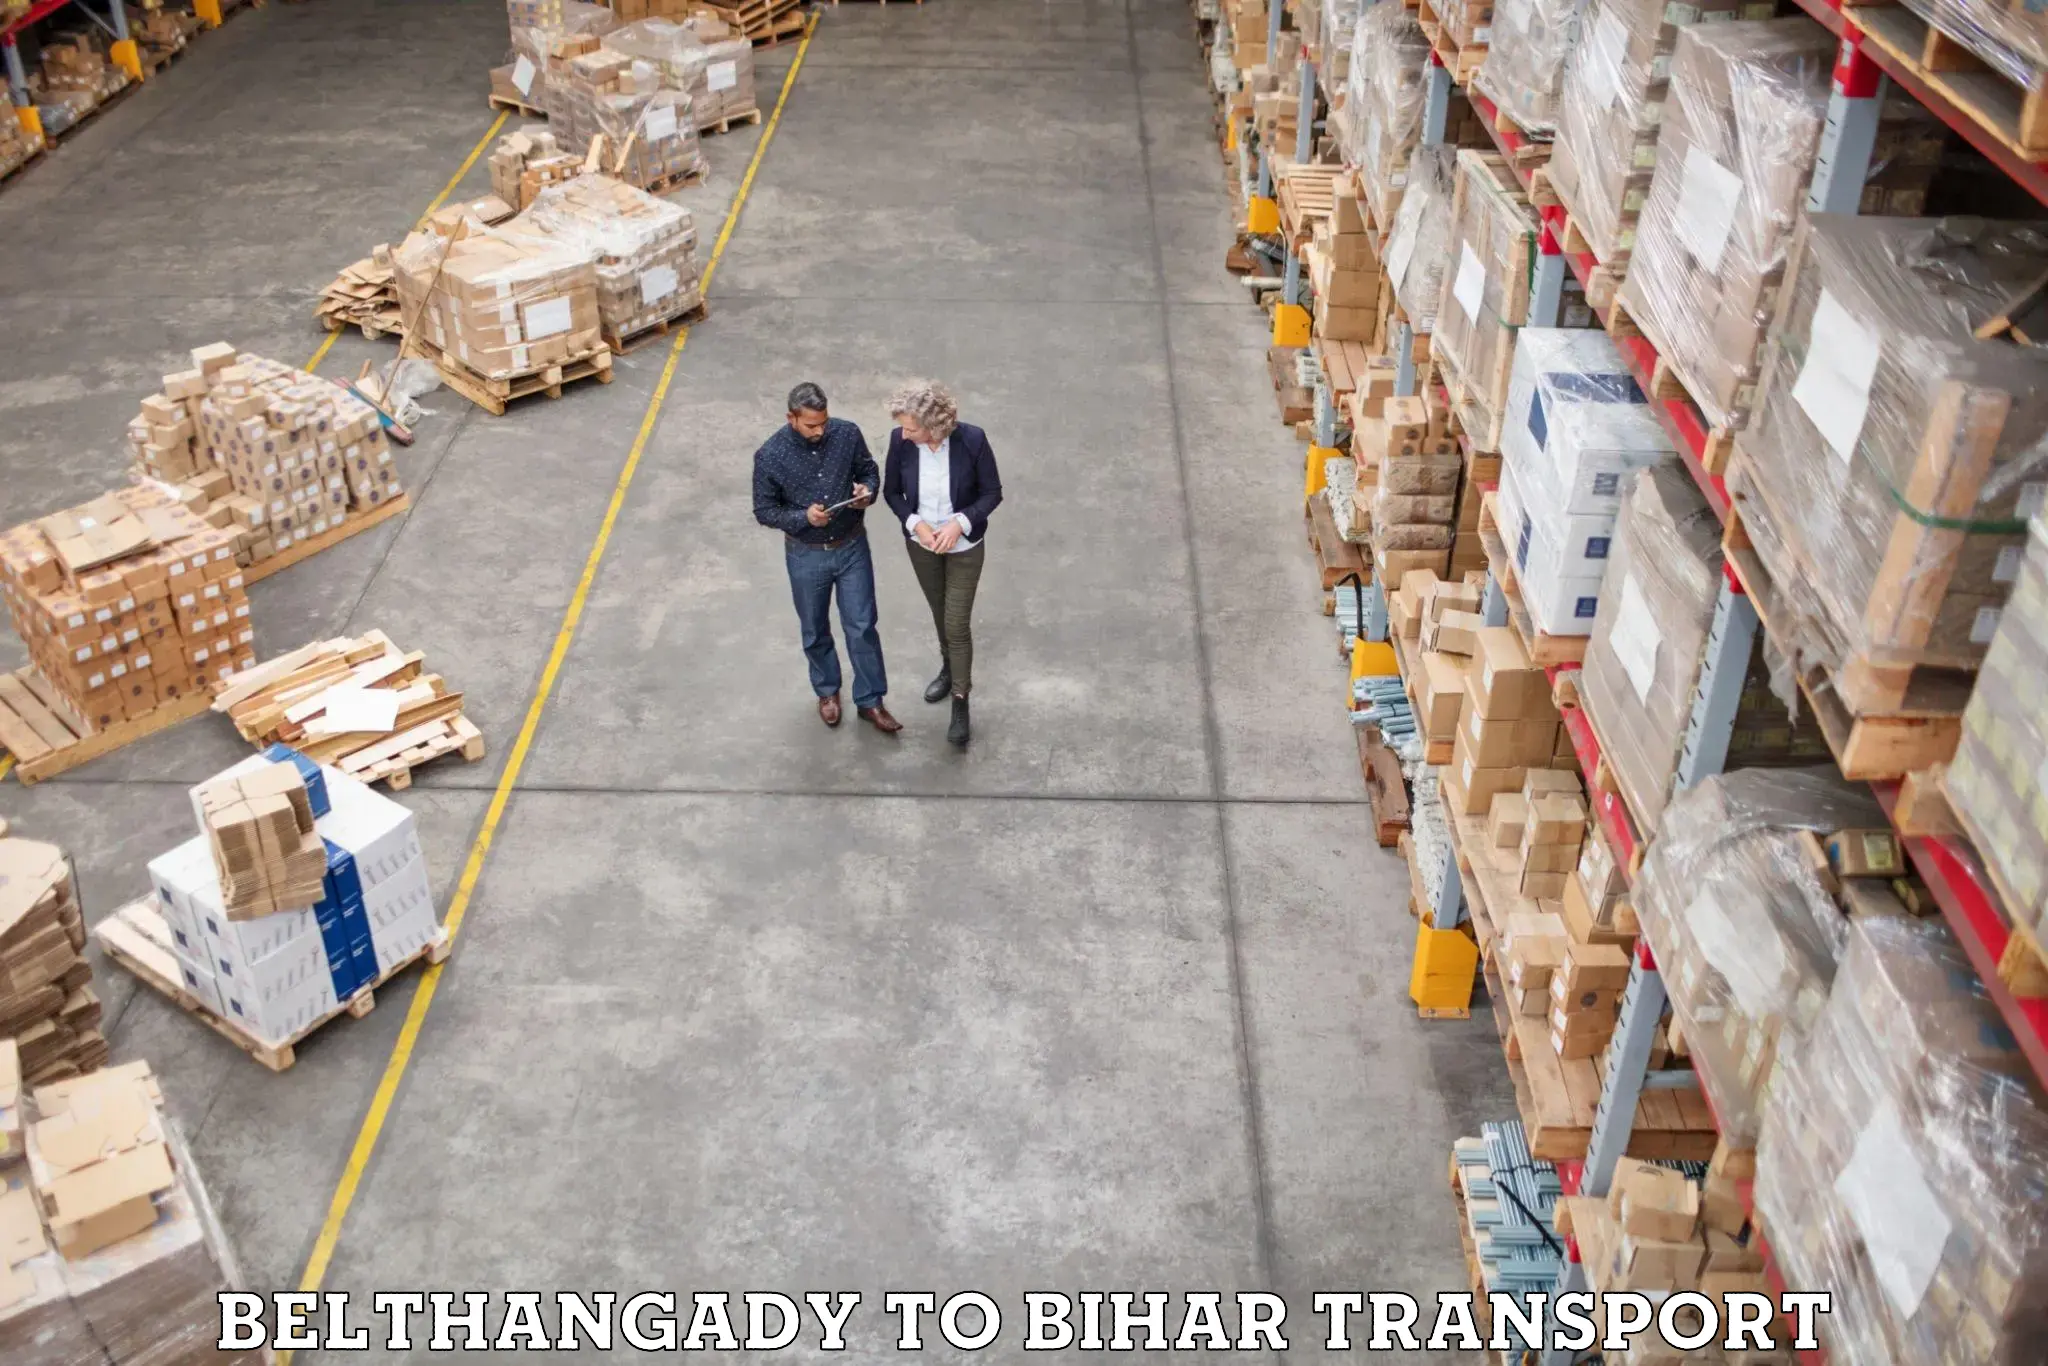 Furniture transport service Belthangady to Chandi Nalanda